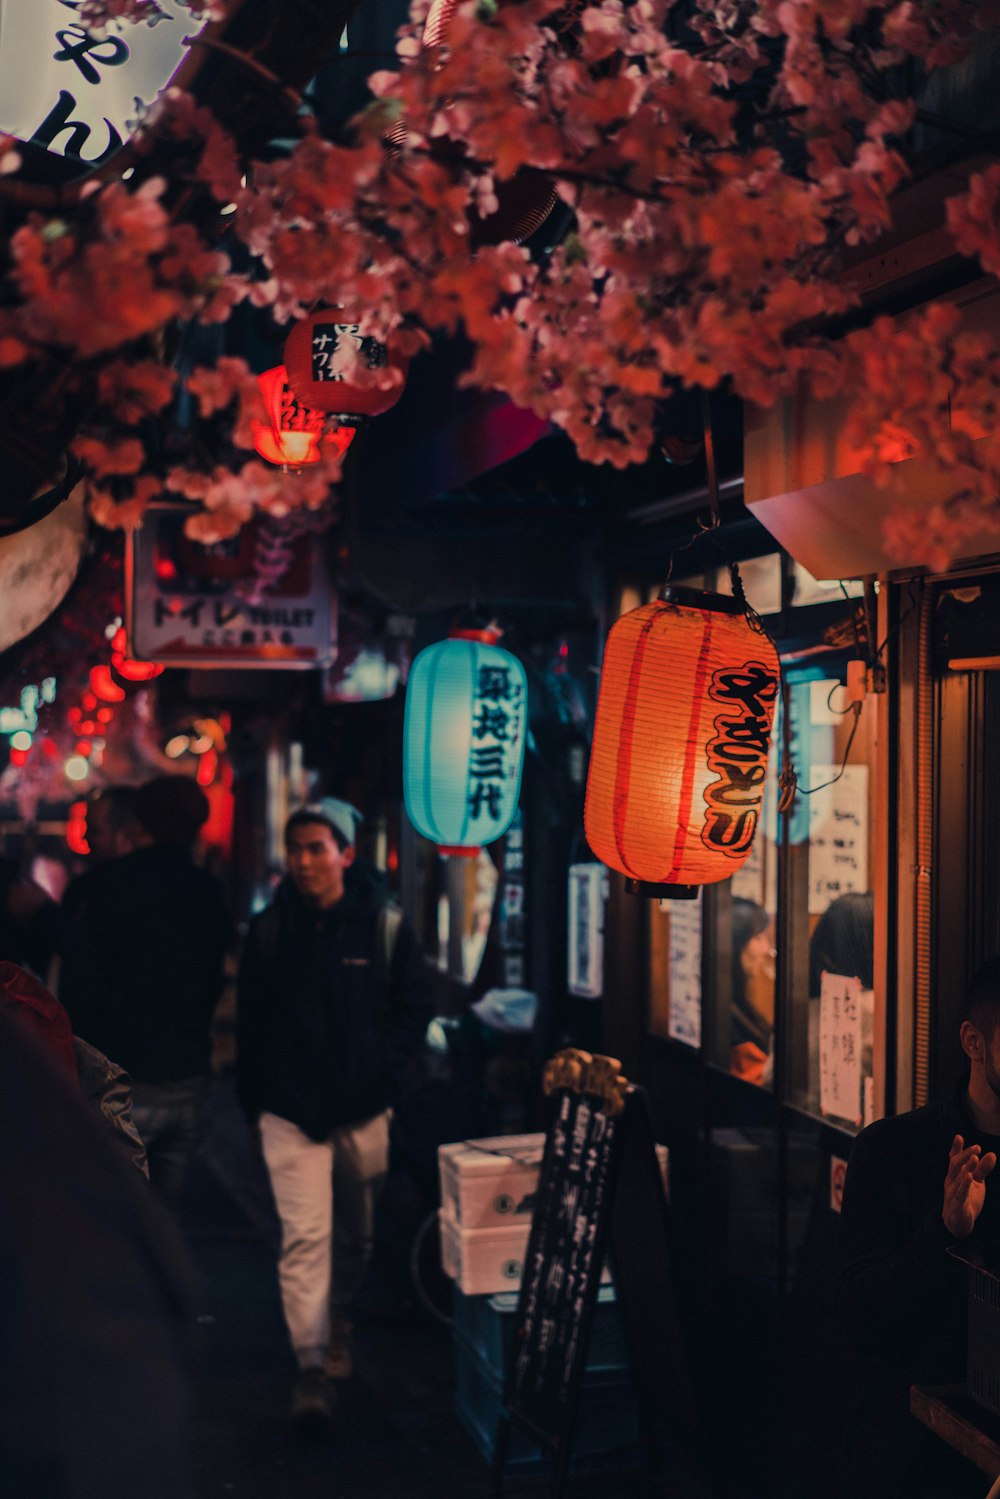 Persone in piedi vicino alla lanterna di carta rossa durante la notte